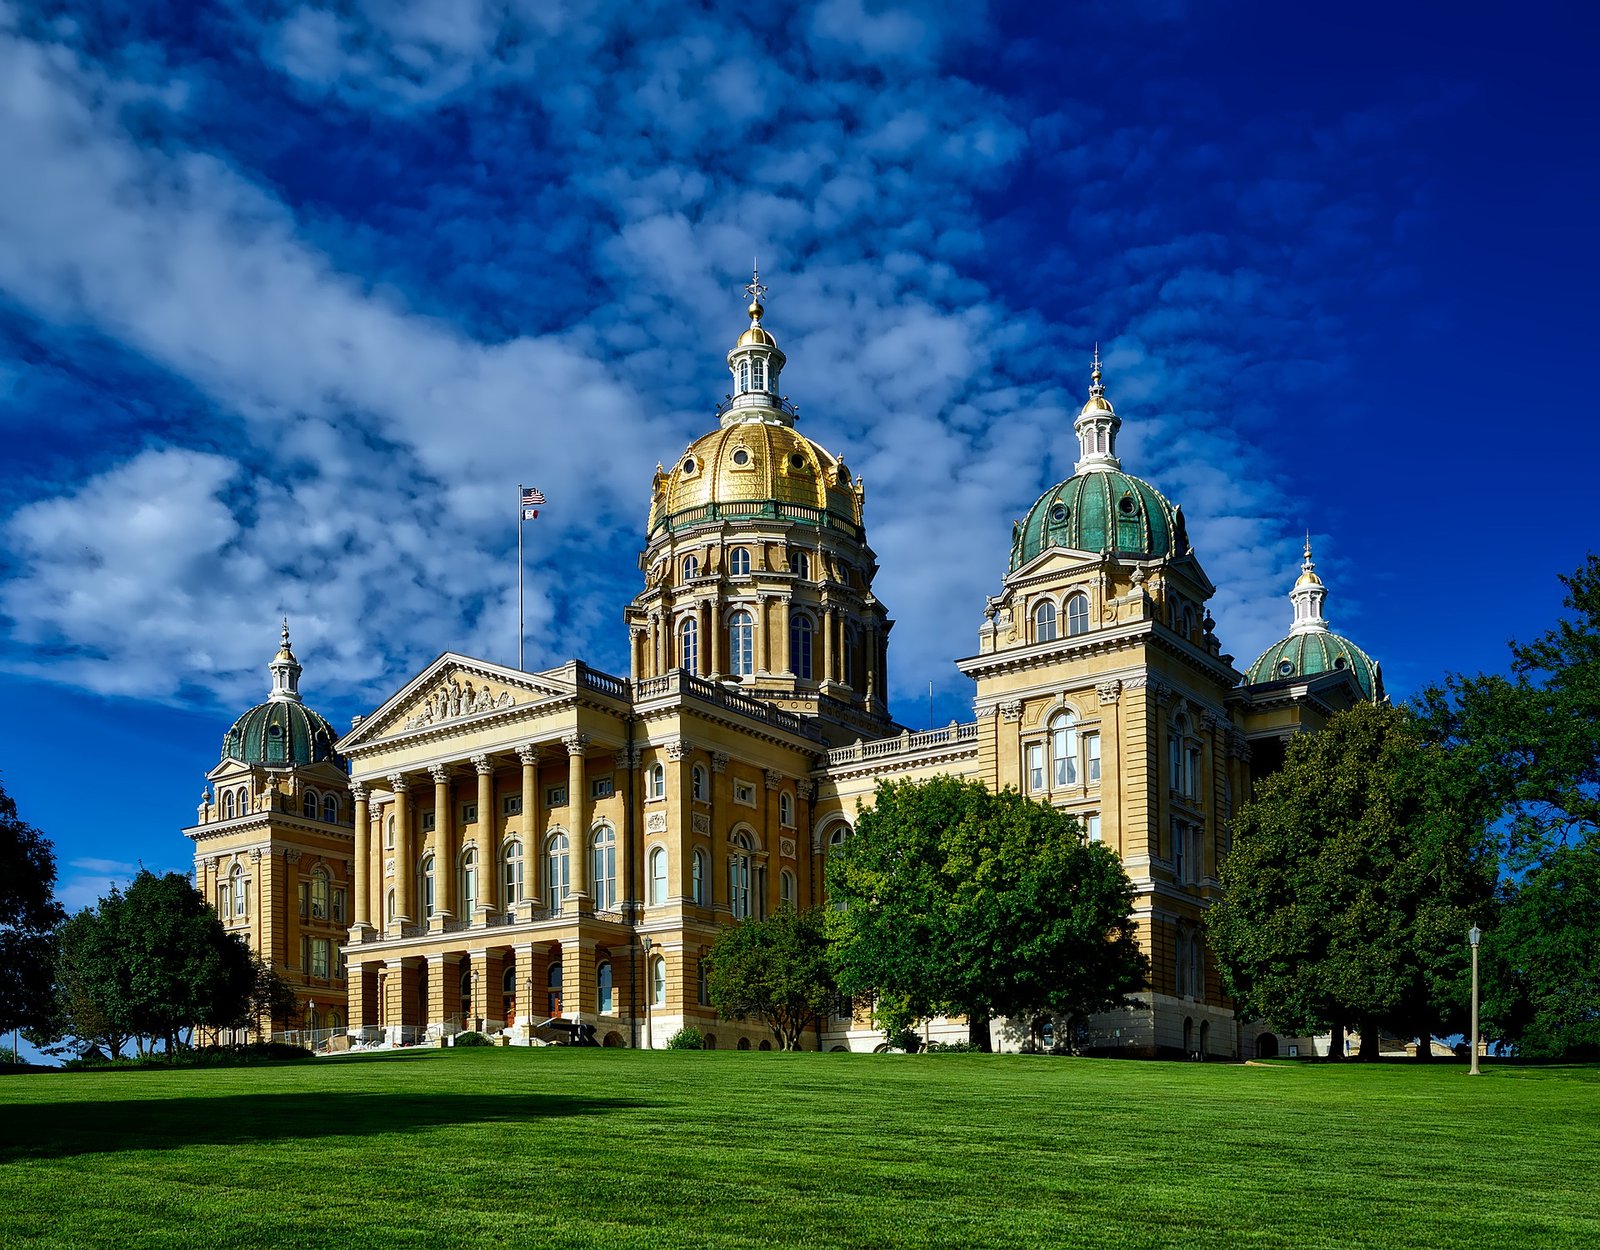 Distracted Driving Bills Pass Iowa Senate Transpo Committee